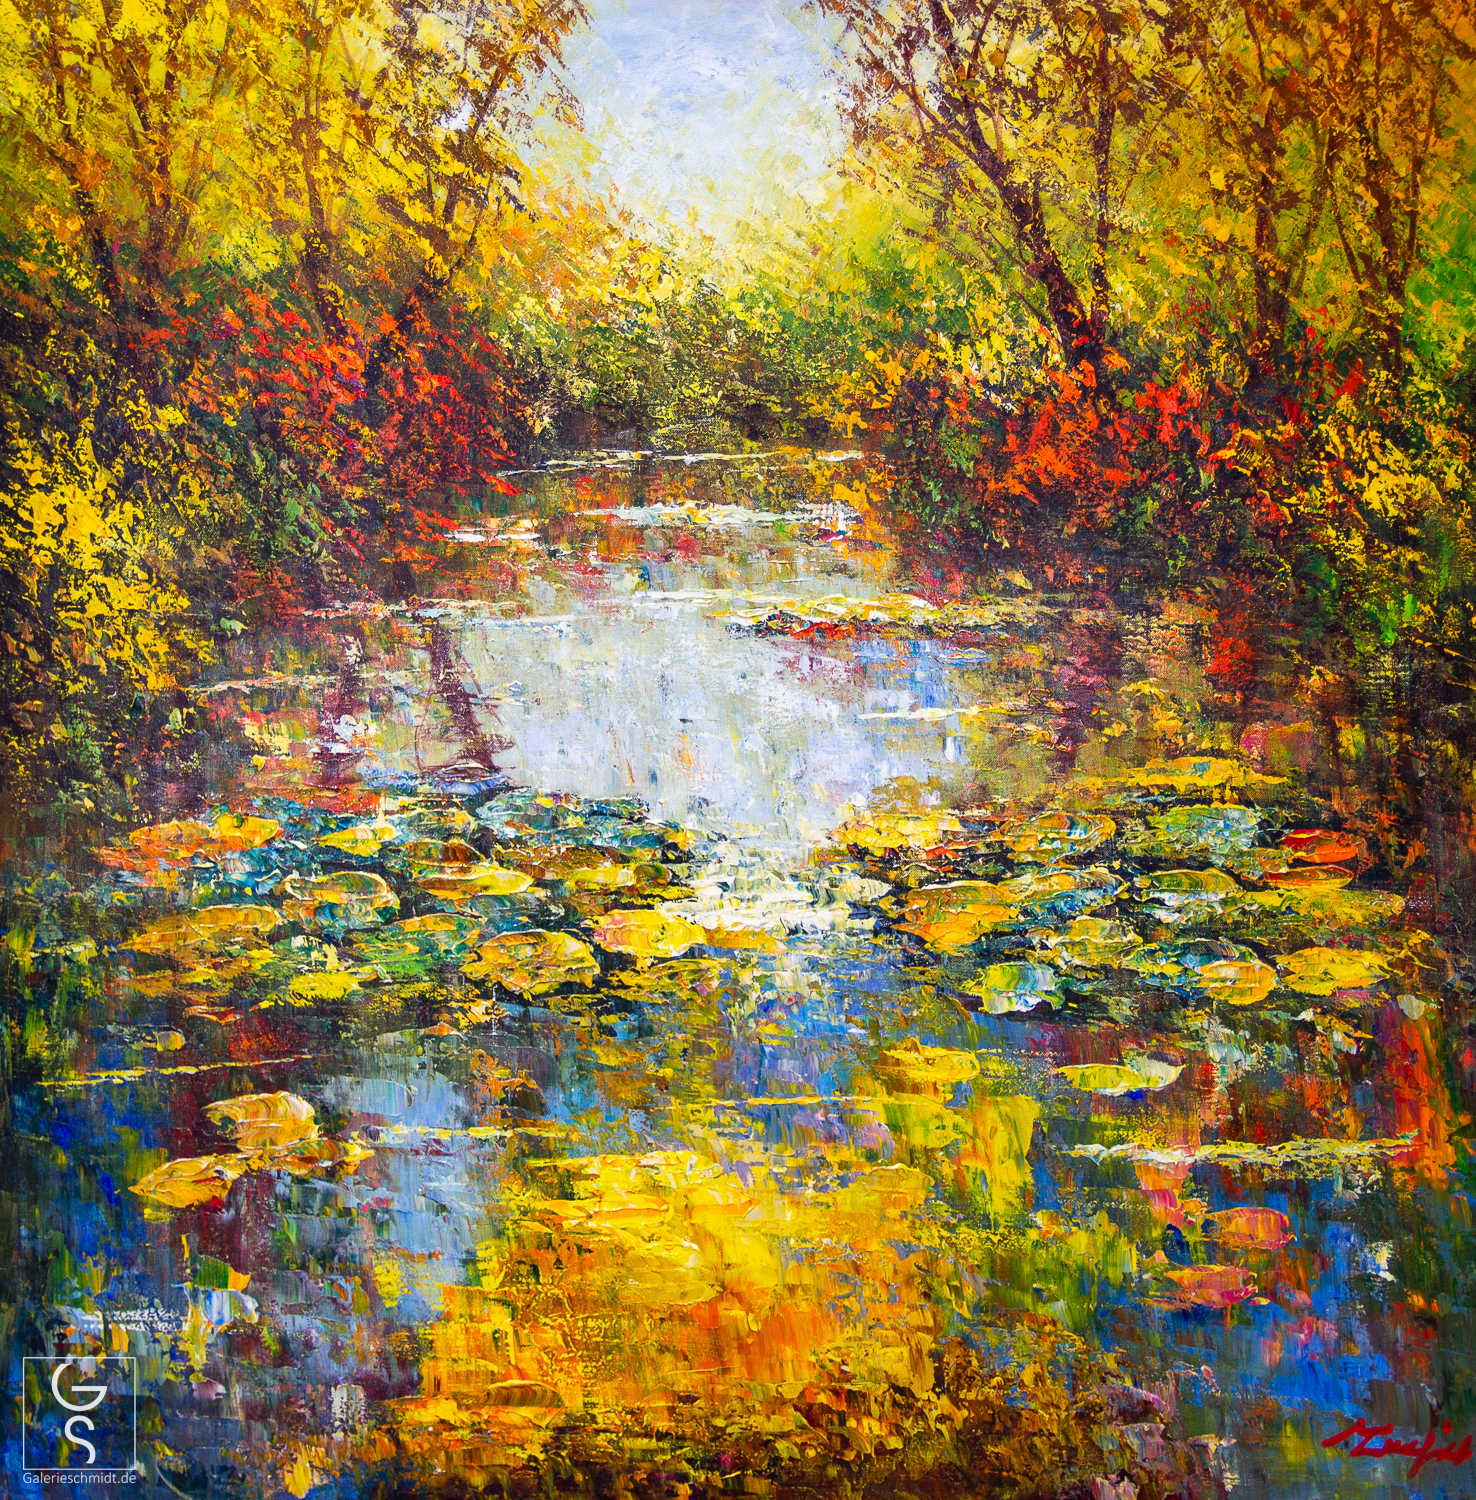 Reflexionen am Wasserspiel, Gemälde von Madjid, abstrakte Landschaft Reflexion eines Waldsees in Herbstfarben